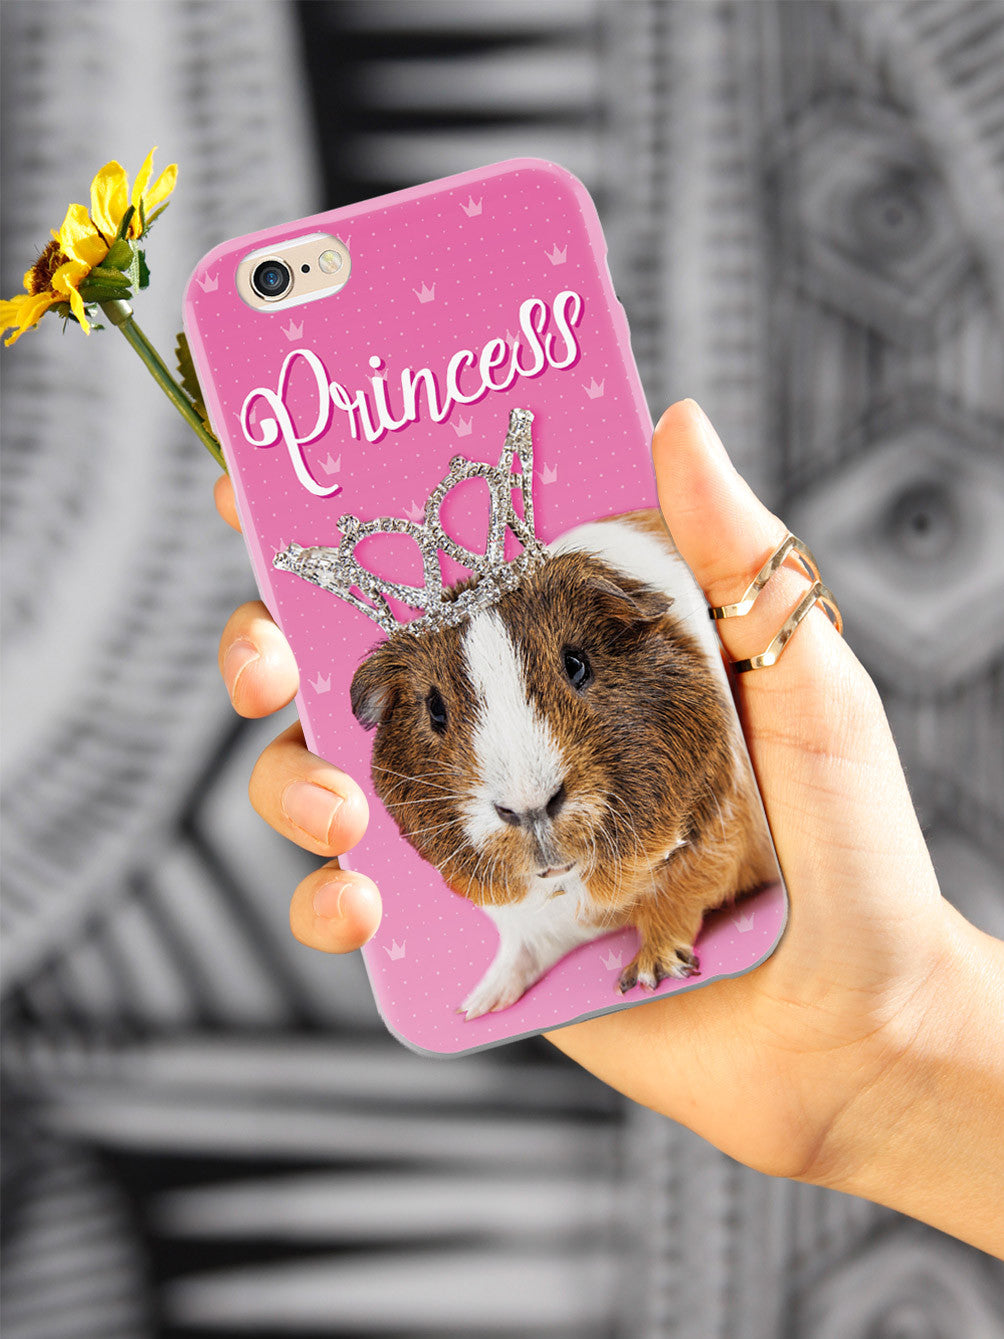 Princess Guinea Pig Case